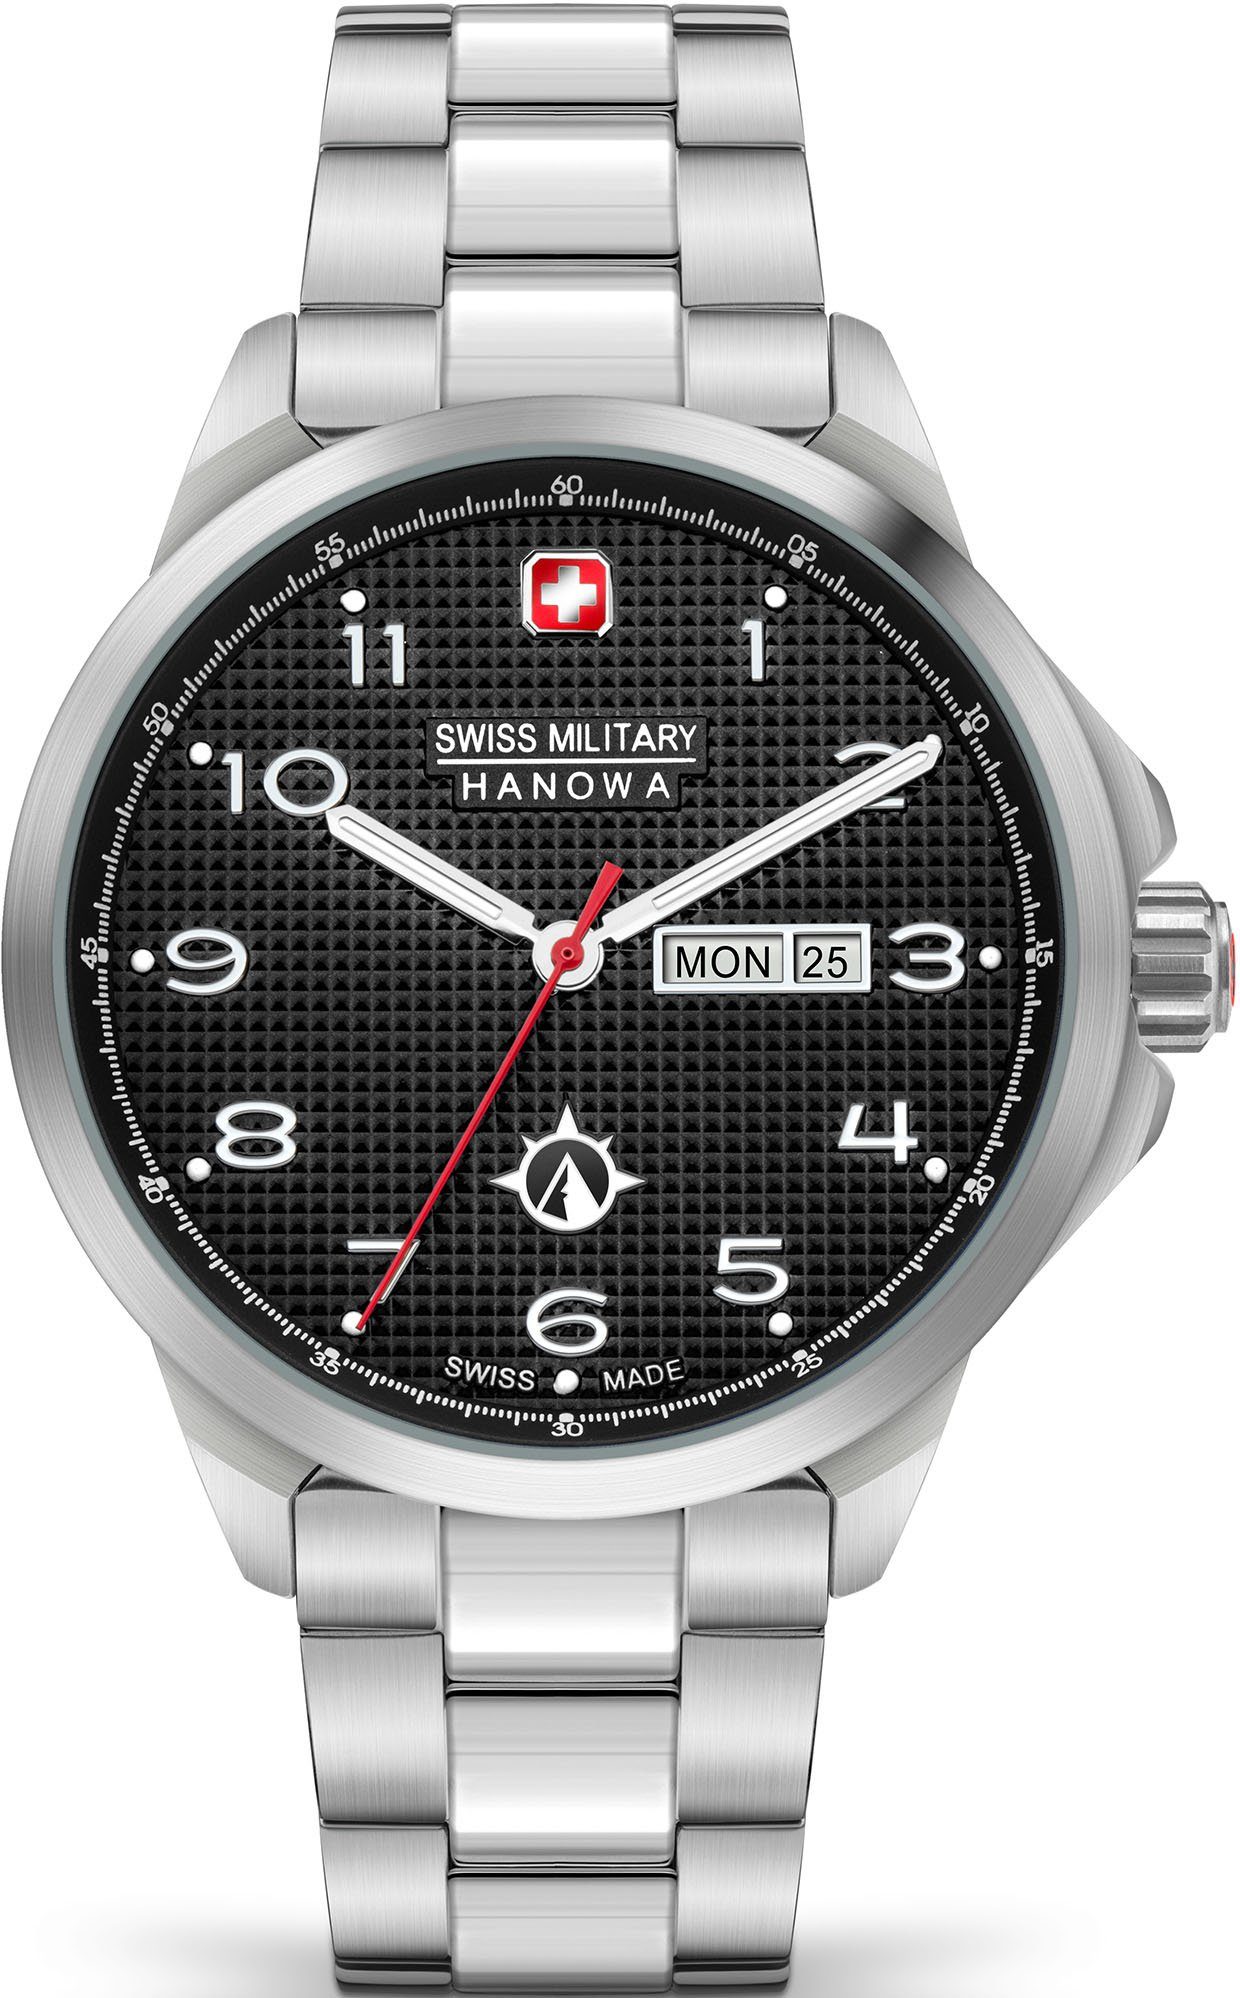 Schweizer Uhr SMWGH2100303 PUMA, Swiss Hanowa Military schwarz